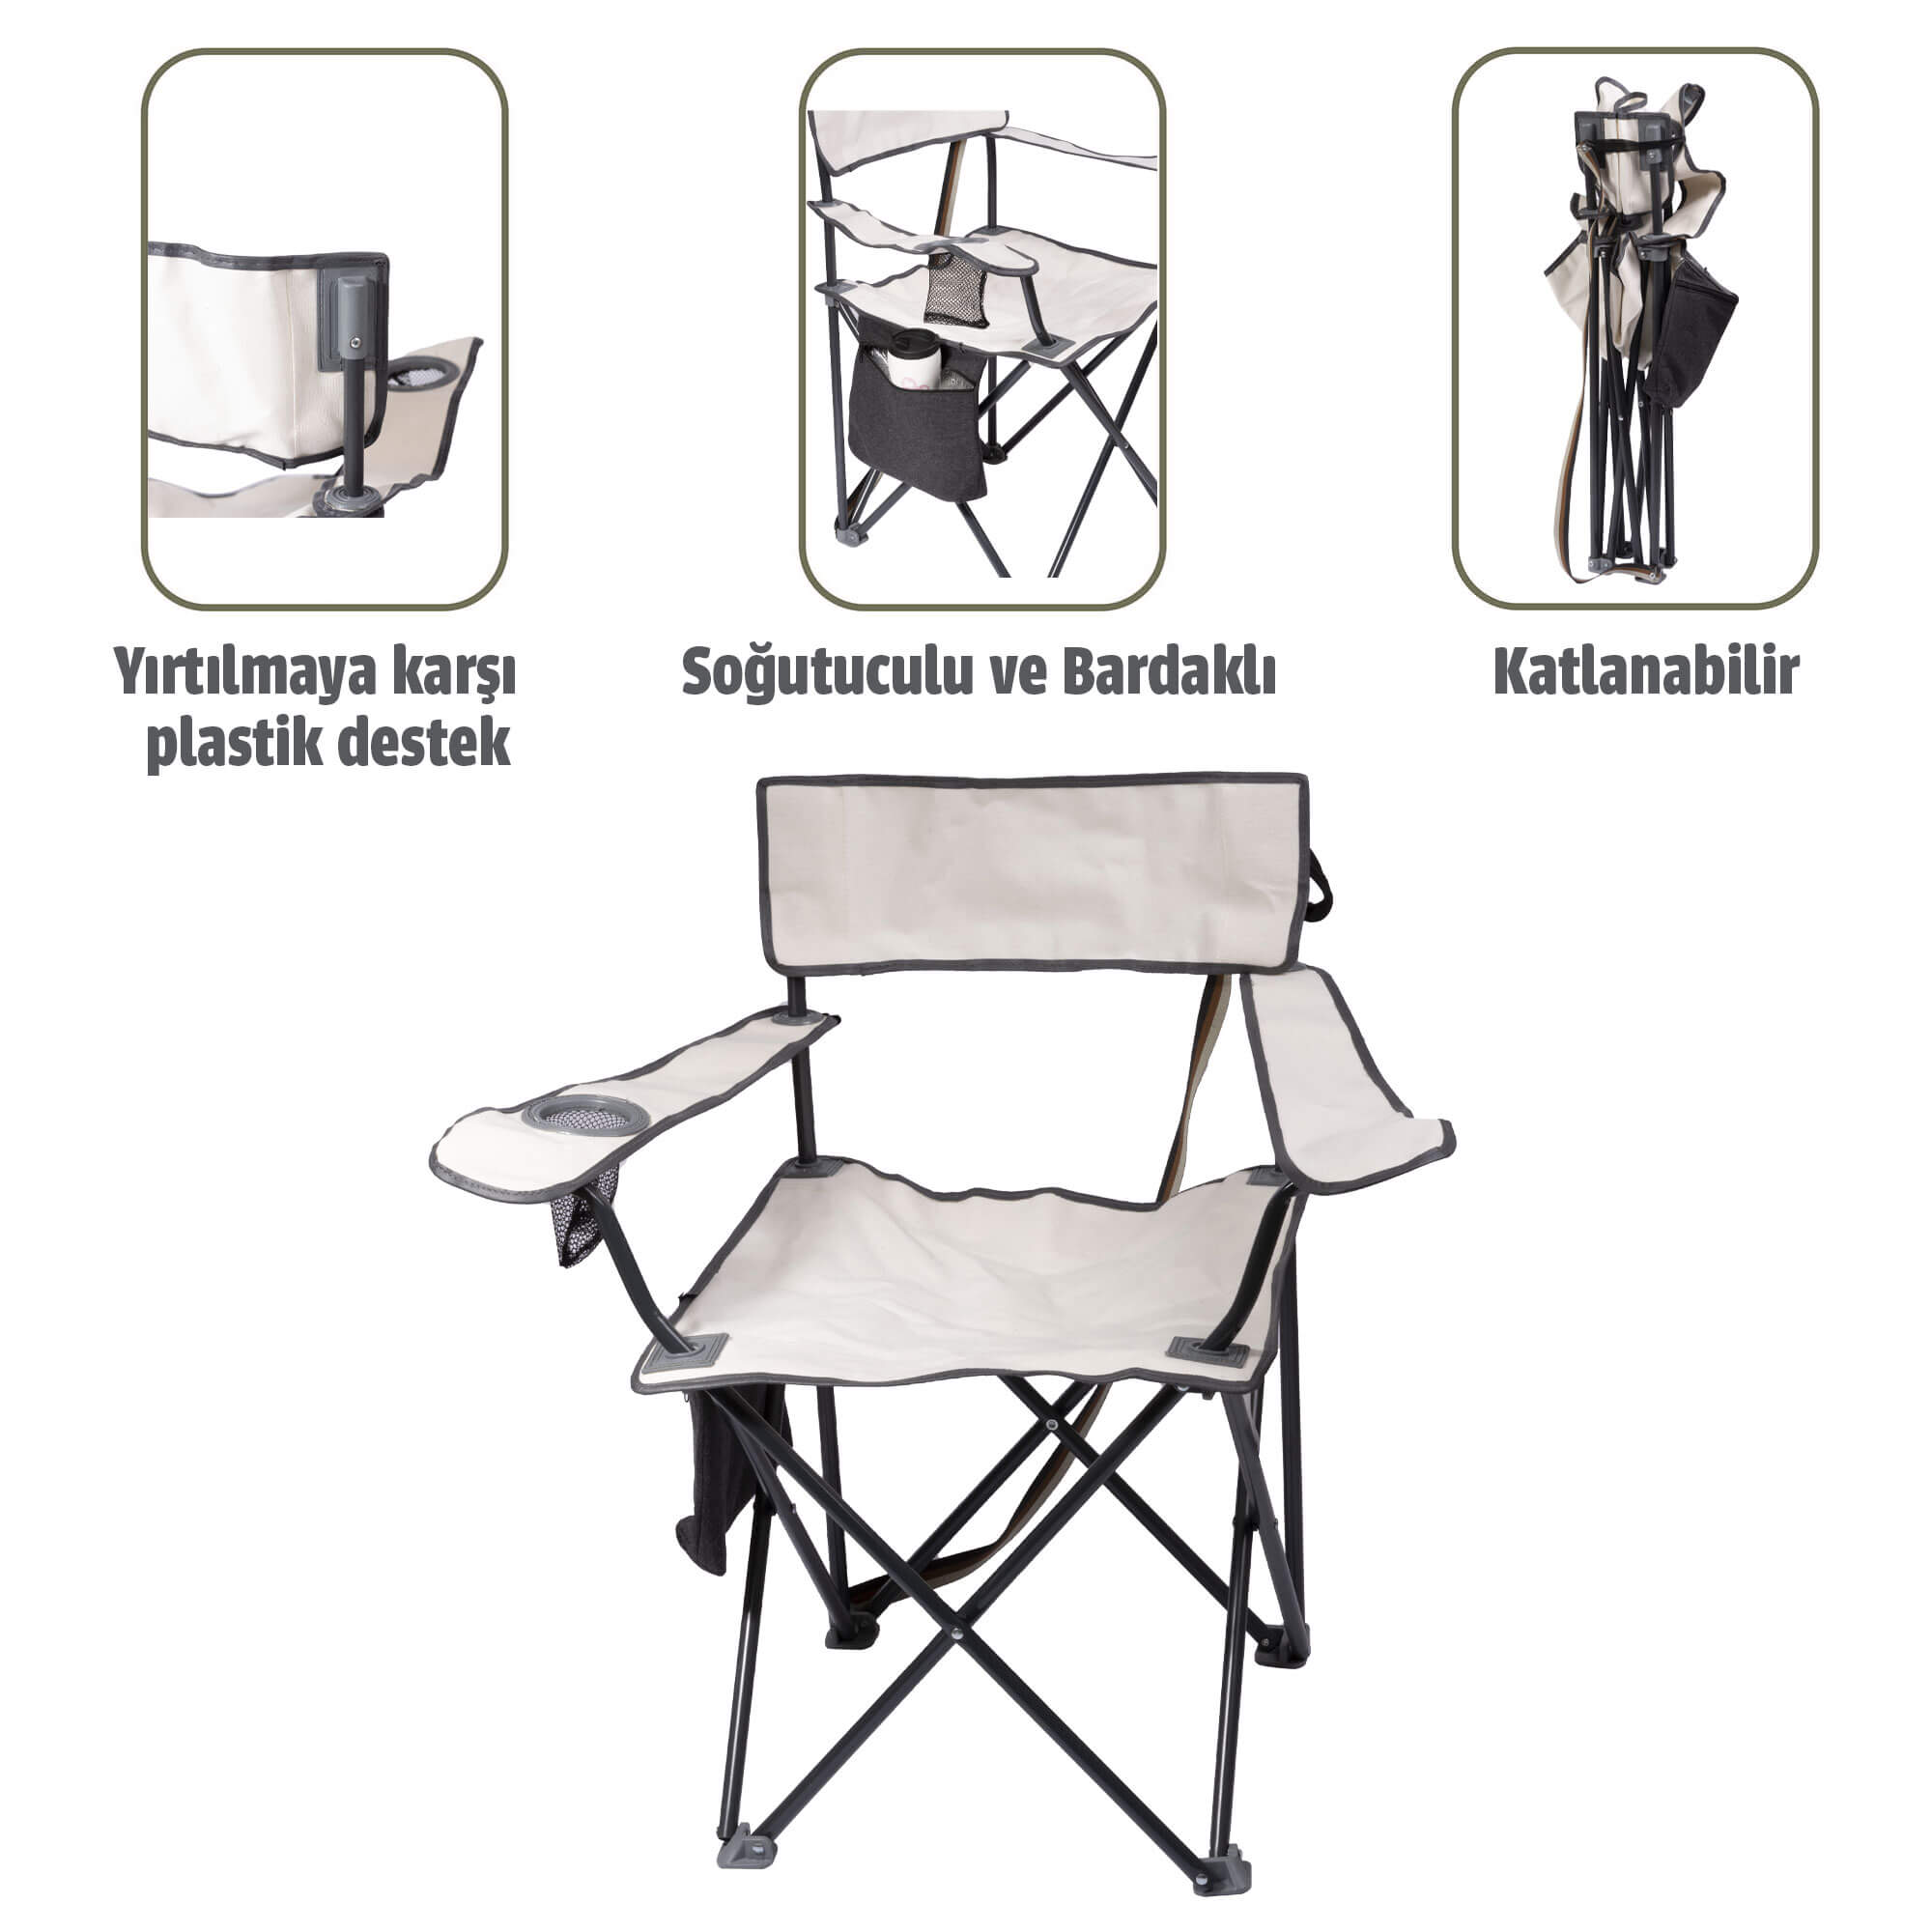 Albastar Soğutuculu ve Bardaklı Kamp Sandalyesi BEYAZ - TEKLİ 